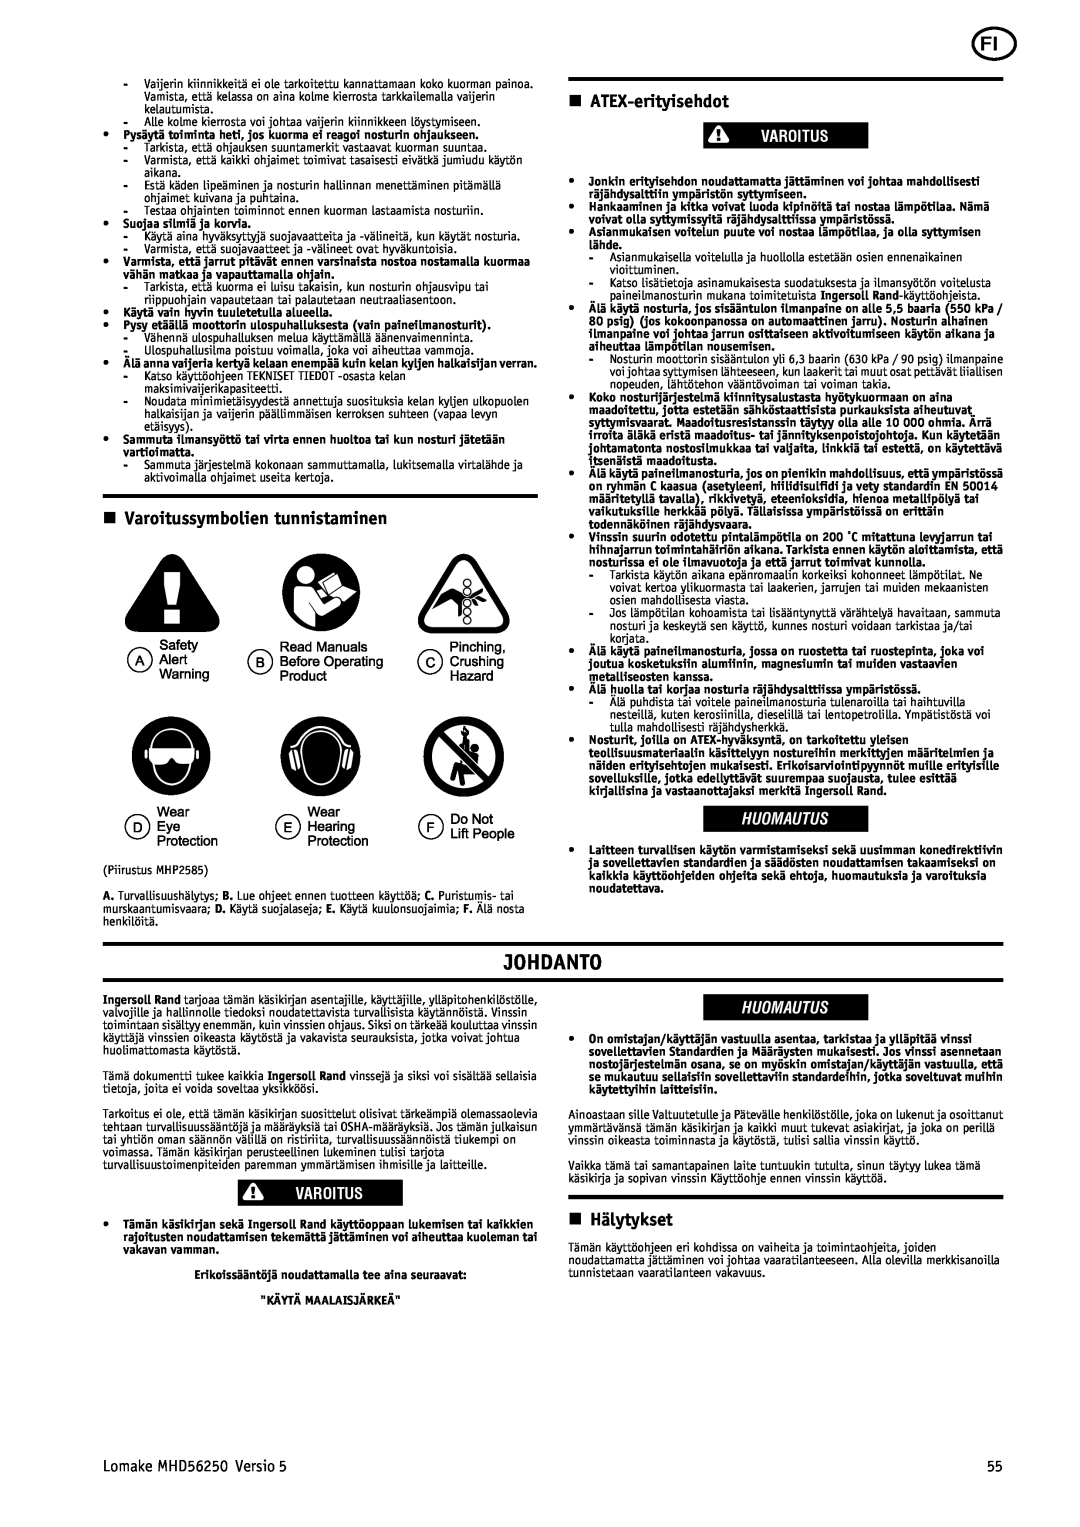 Ingersoll-Rand MHD56250 manual Johdanto, n Varoitussymbolien tunnistaminen, n ATEX-erityisehdot, n Hälytykset, Huomautus 